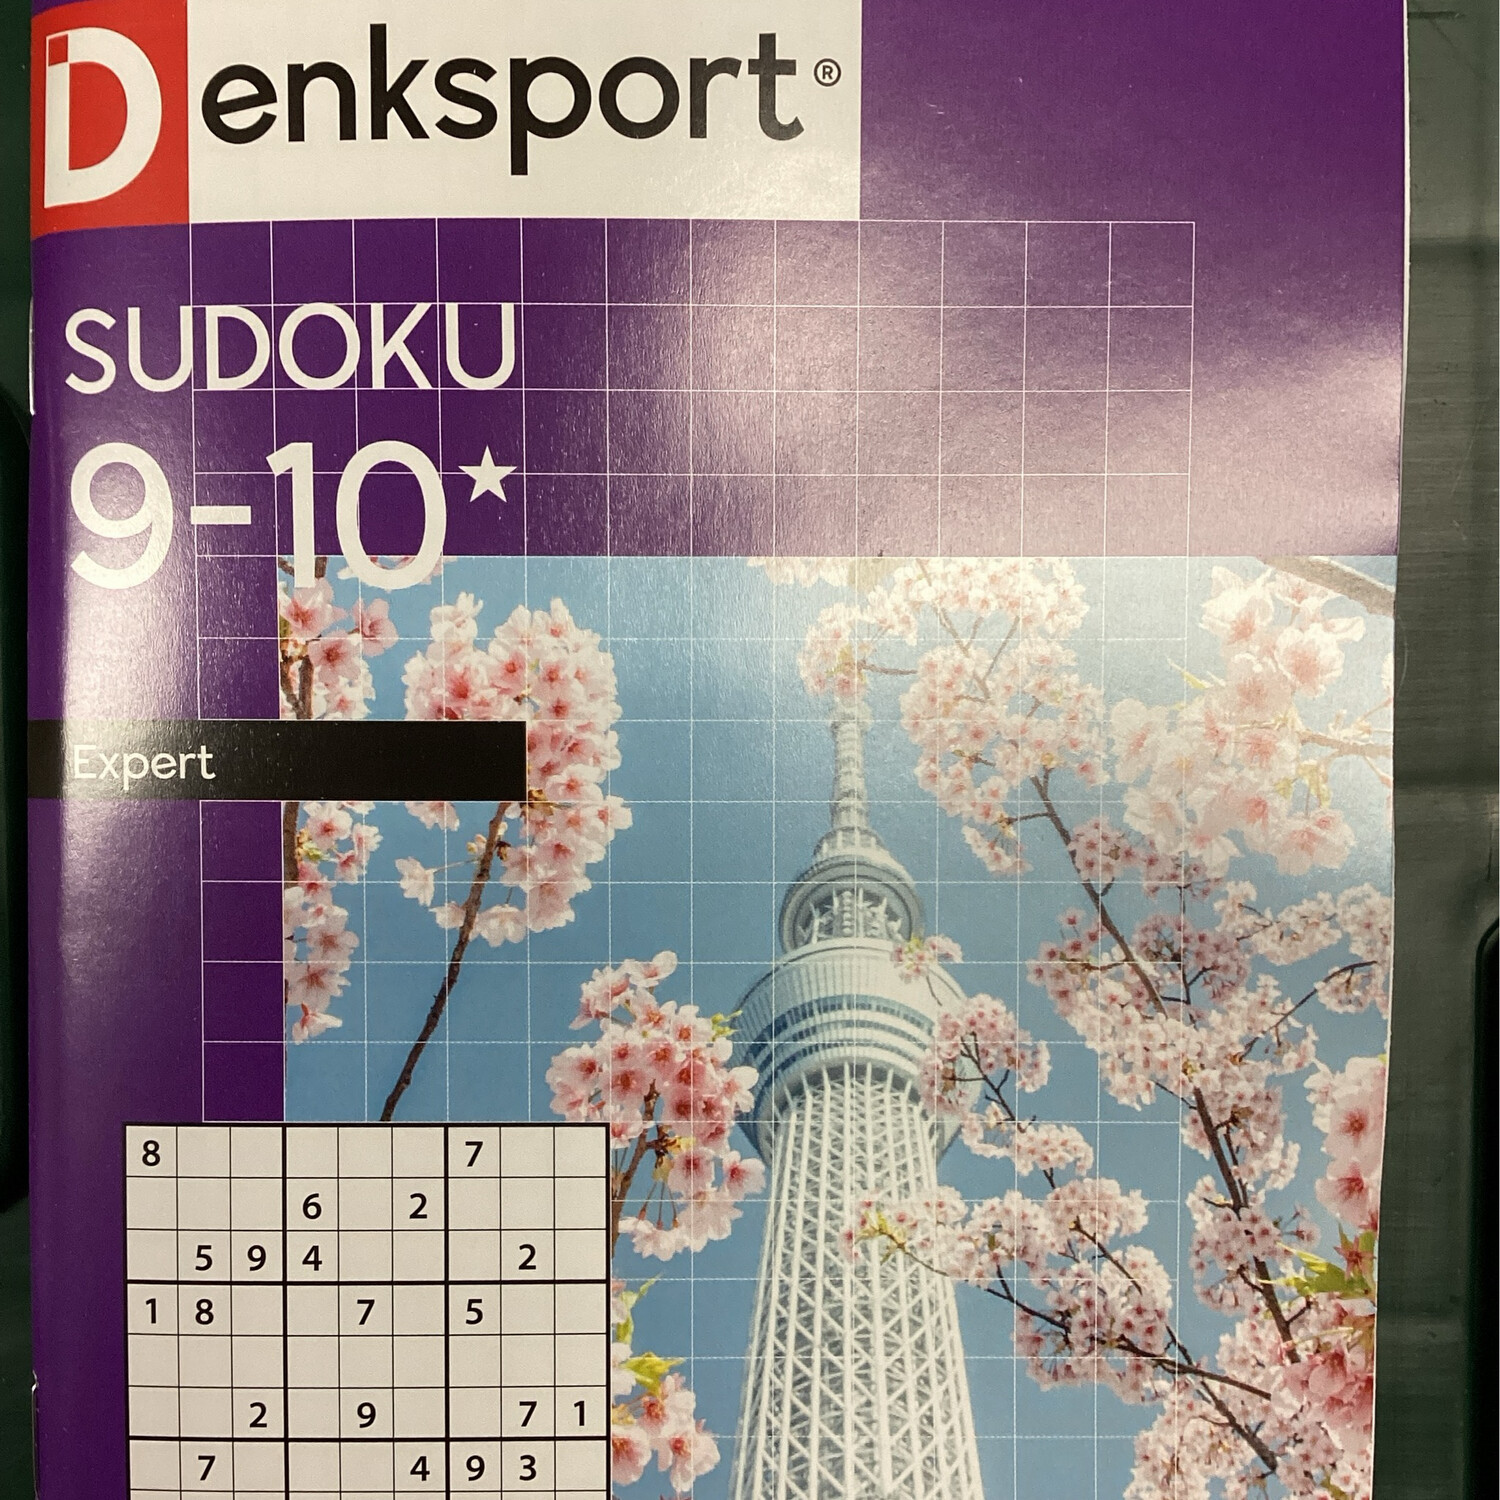 DS SUDOKU 9-10 EXPERT 55